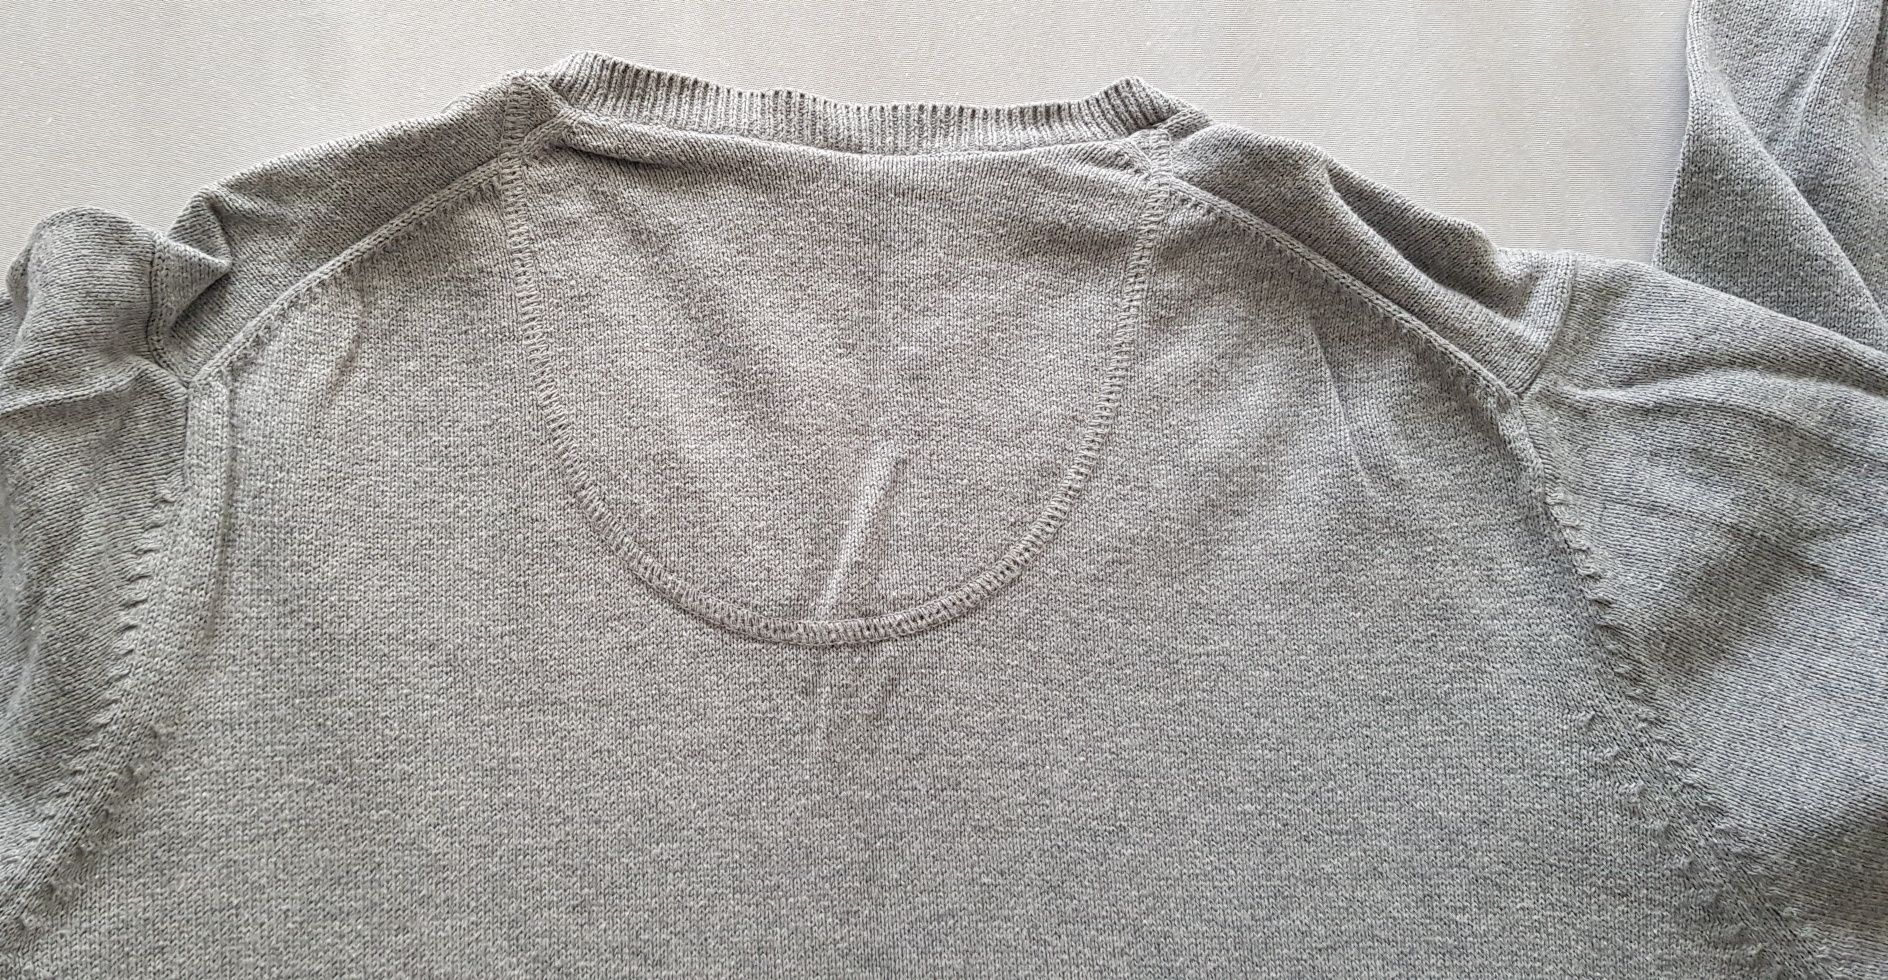 Męski sweter marki Marks and Spencer rozmiar EUR L szary popiel